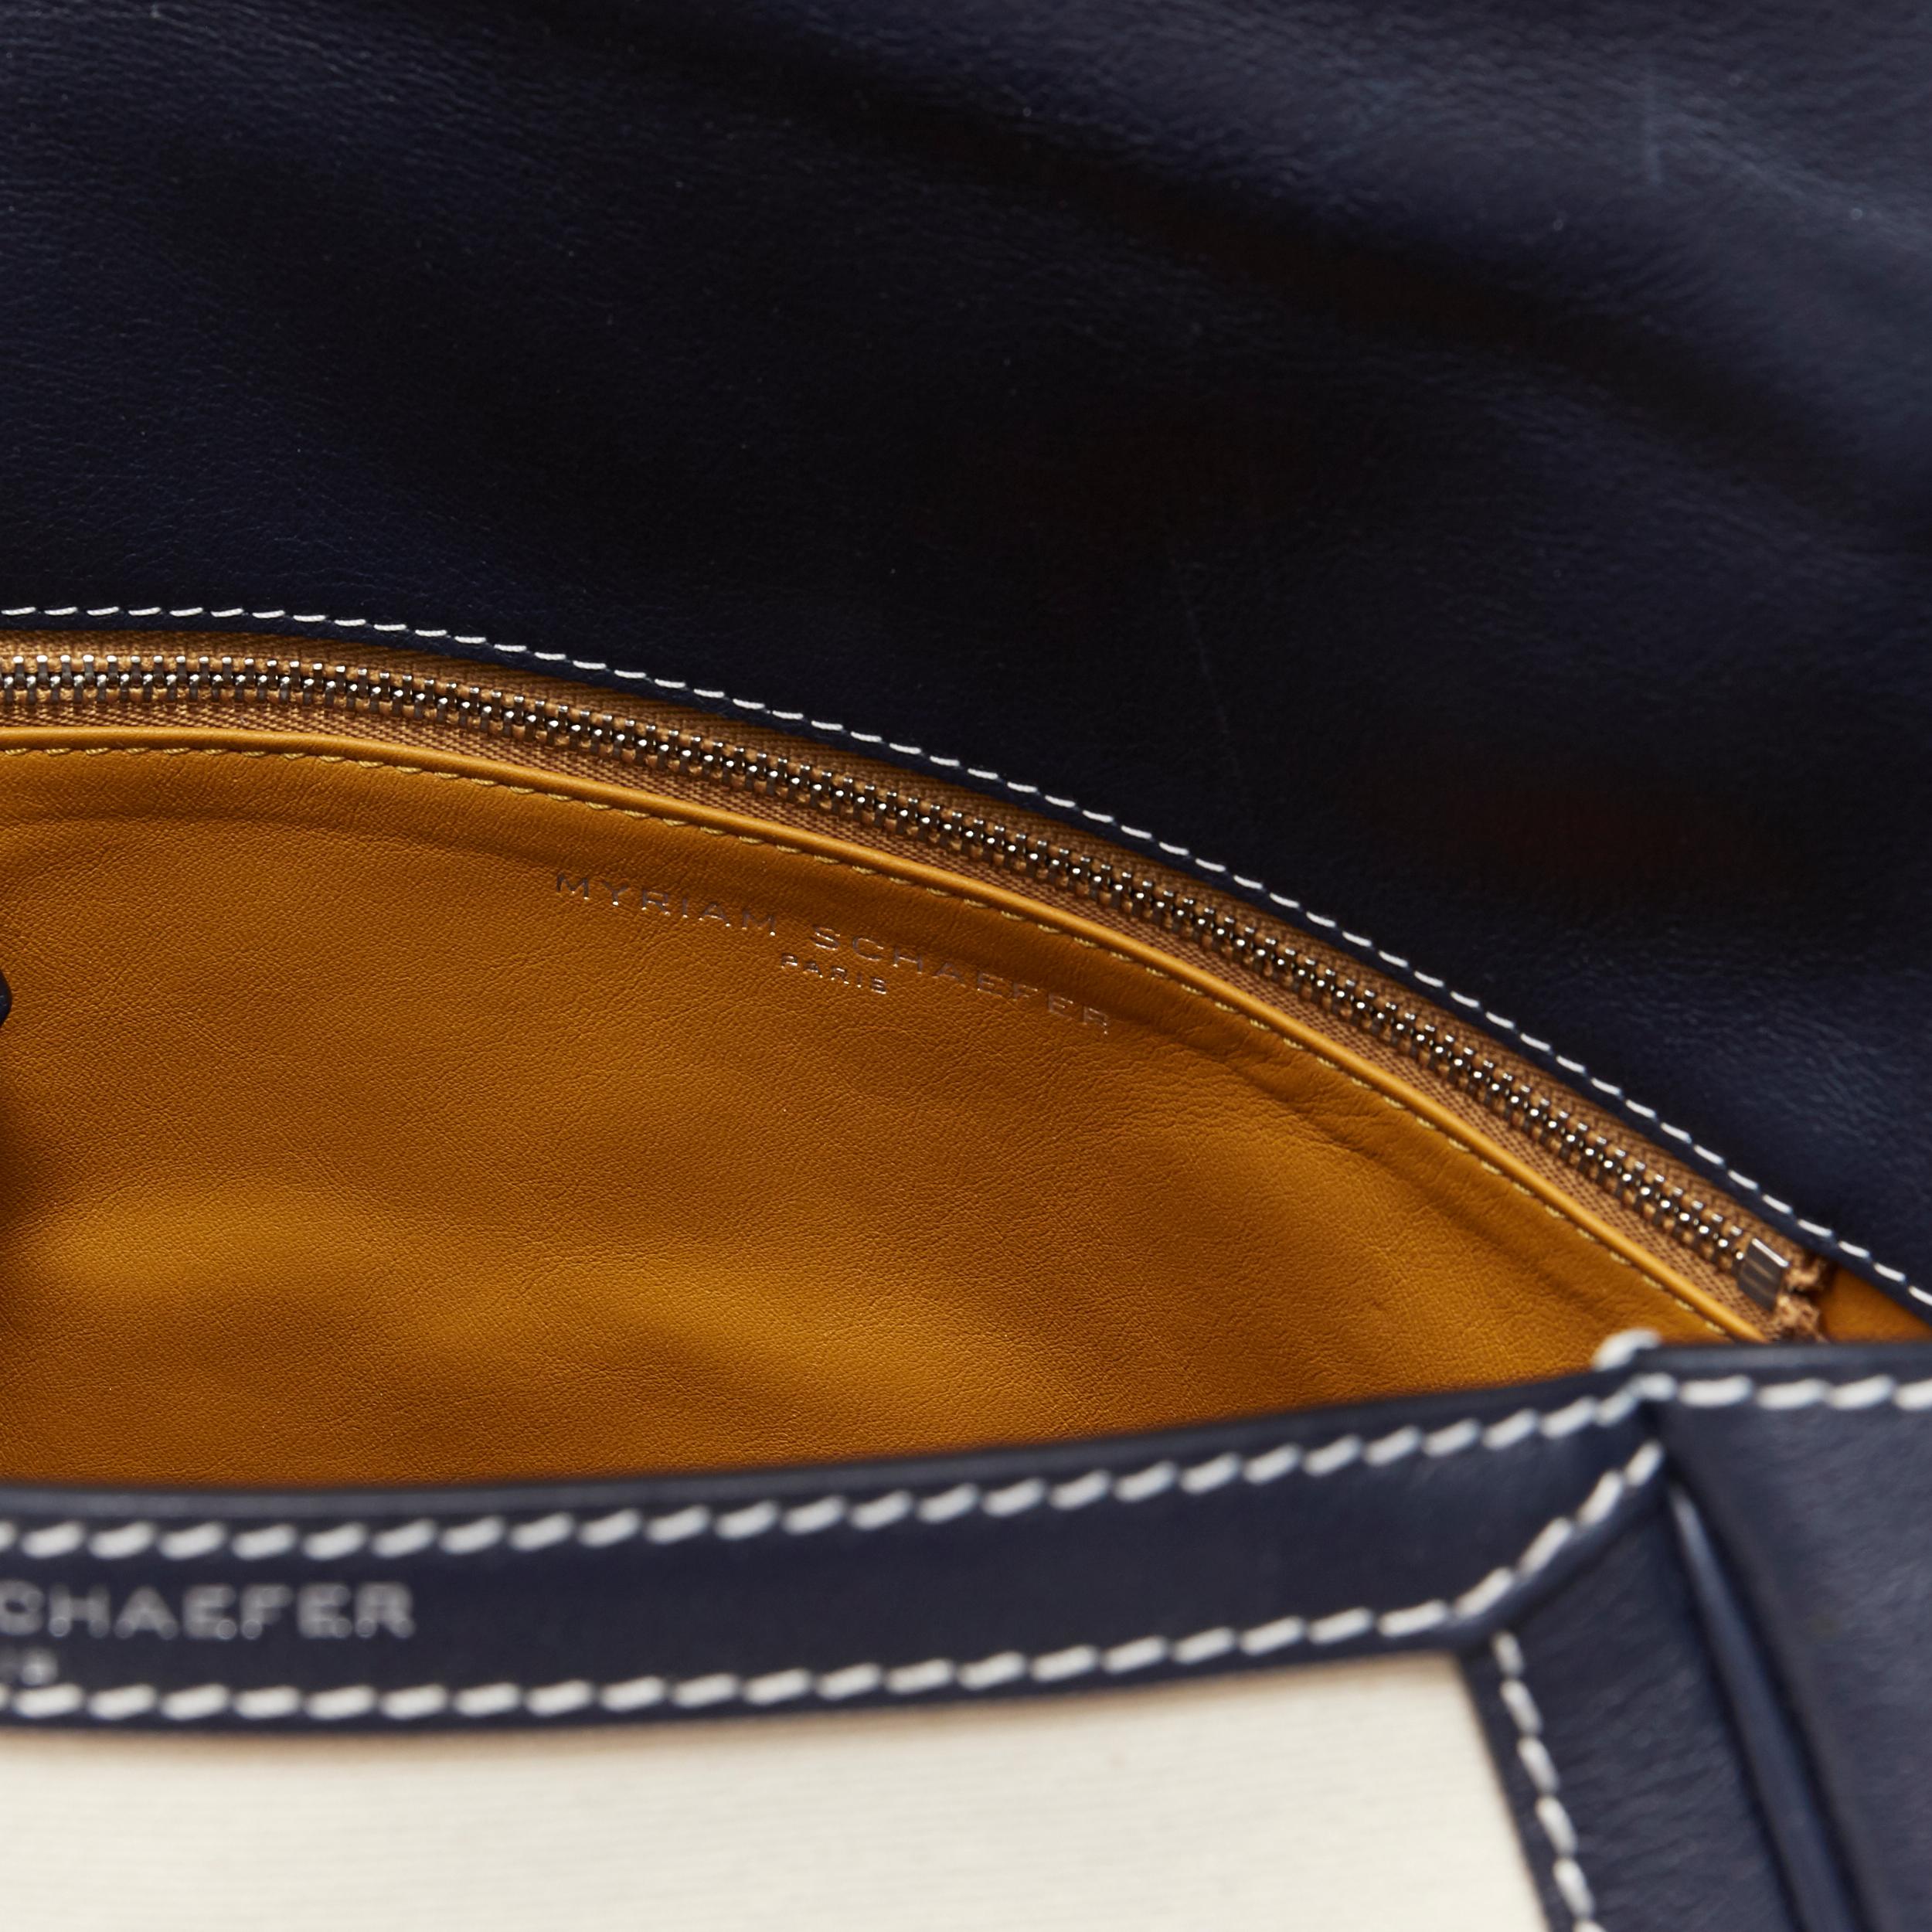 MYRIAM SCHAEFER Byron navy blue beige canvas top handle satchel shoulder bag 5